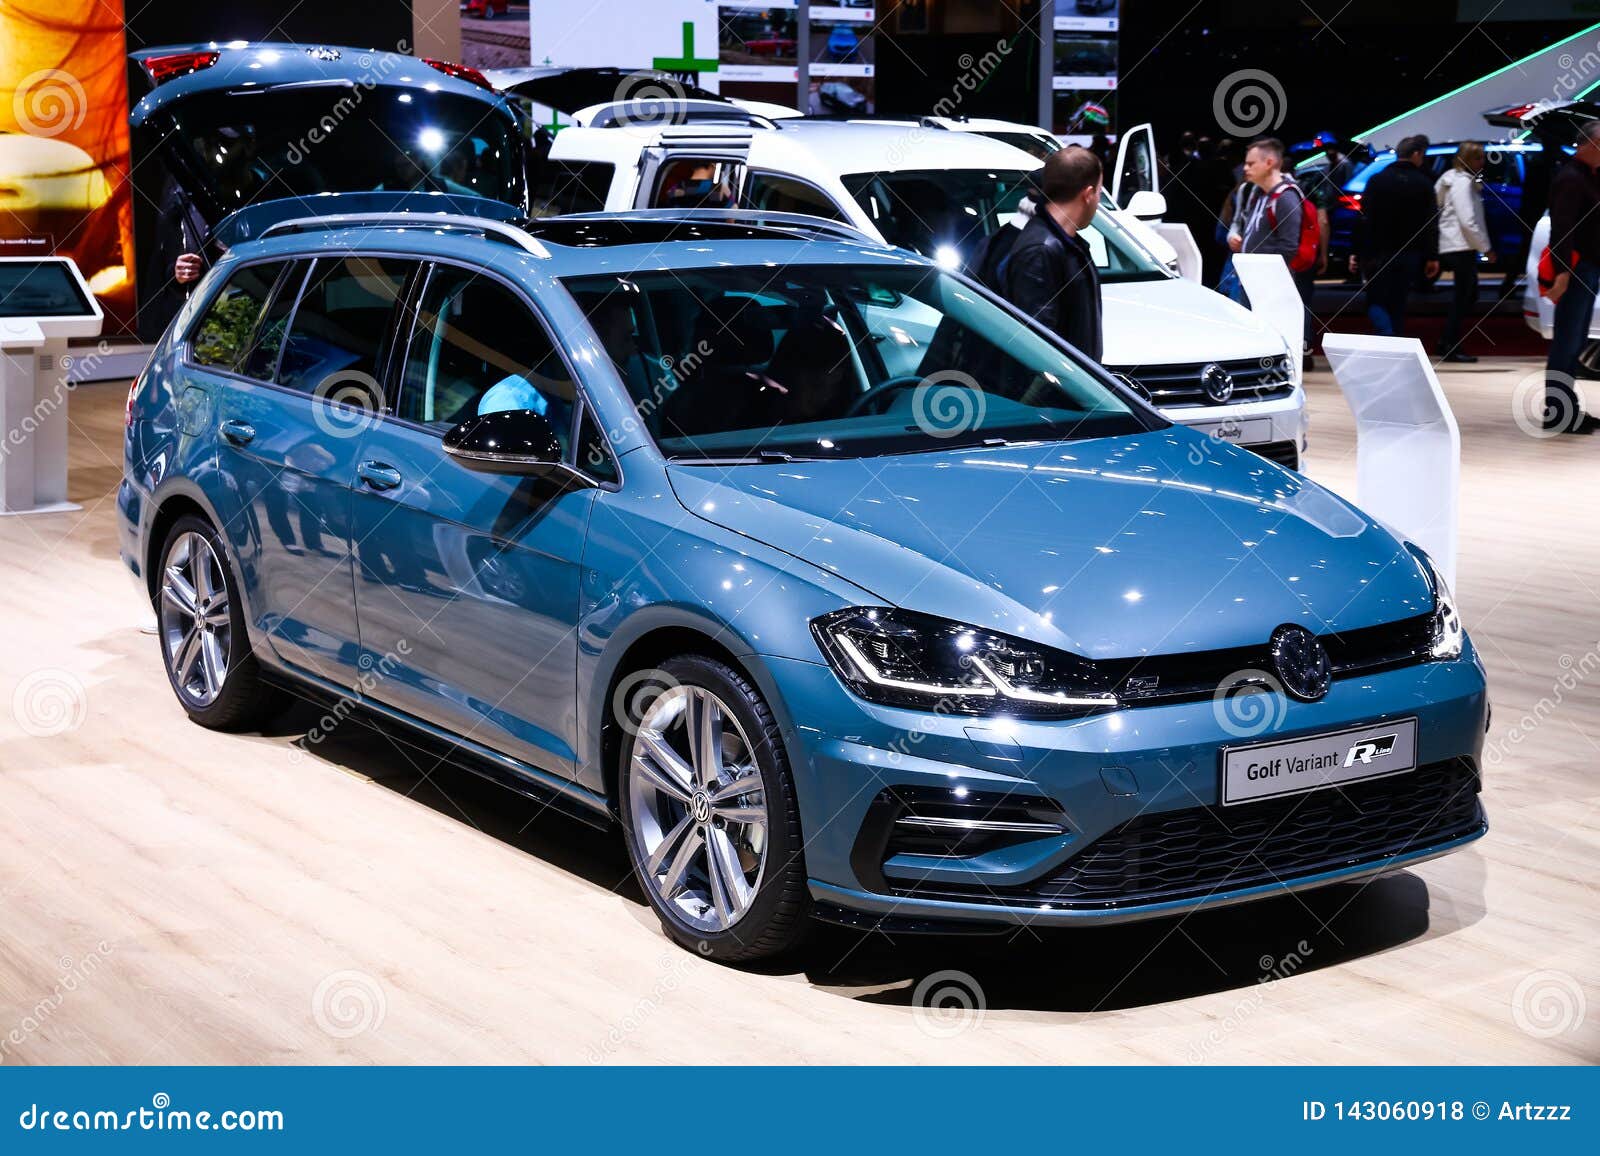 Volkswagen Bora Variant images (11 of 11)